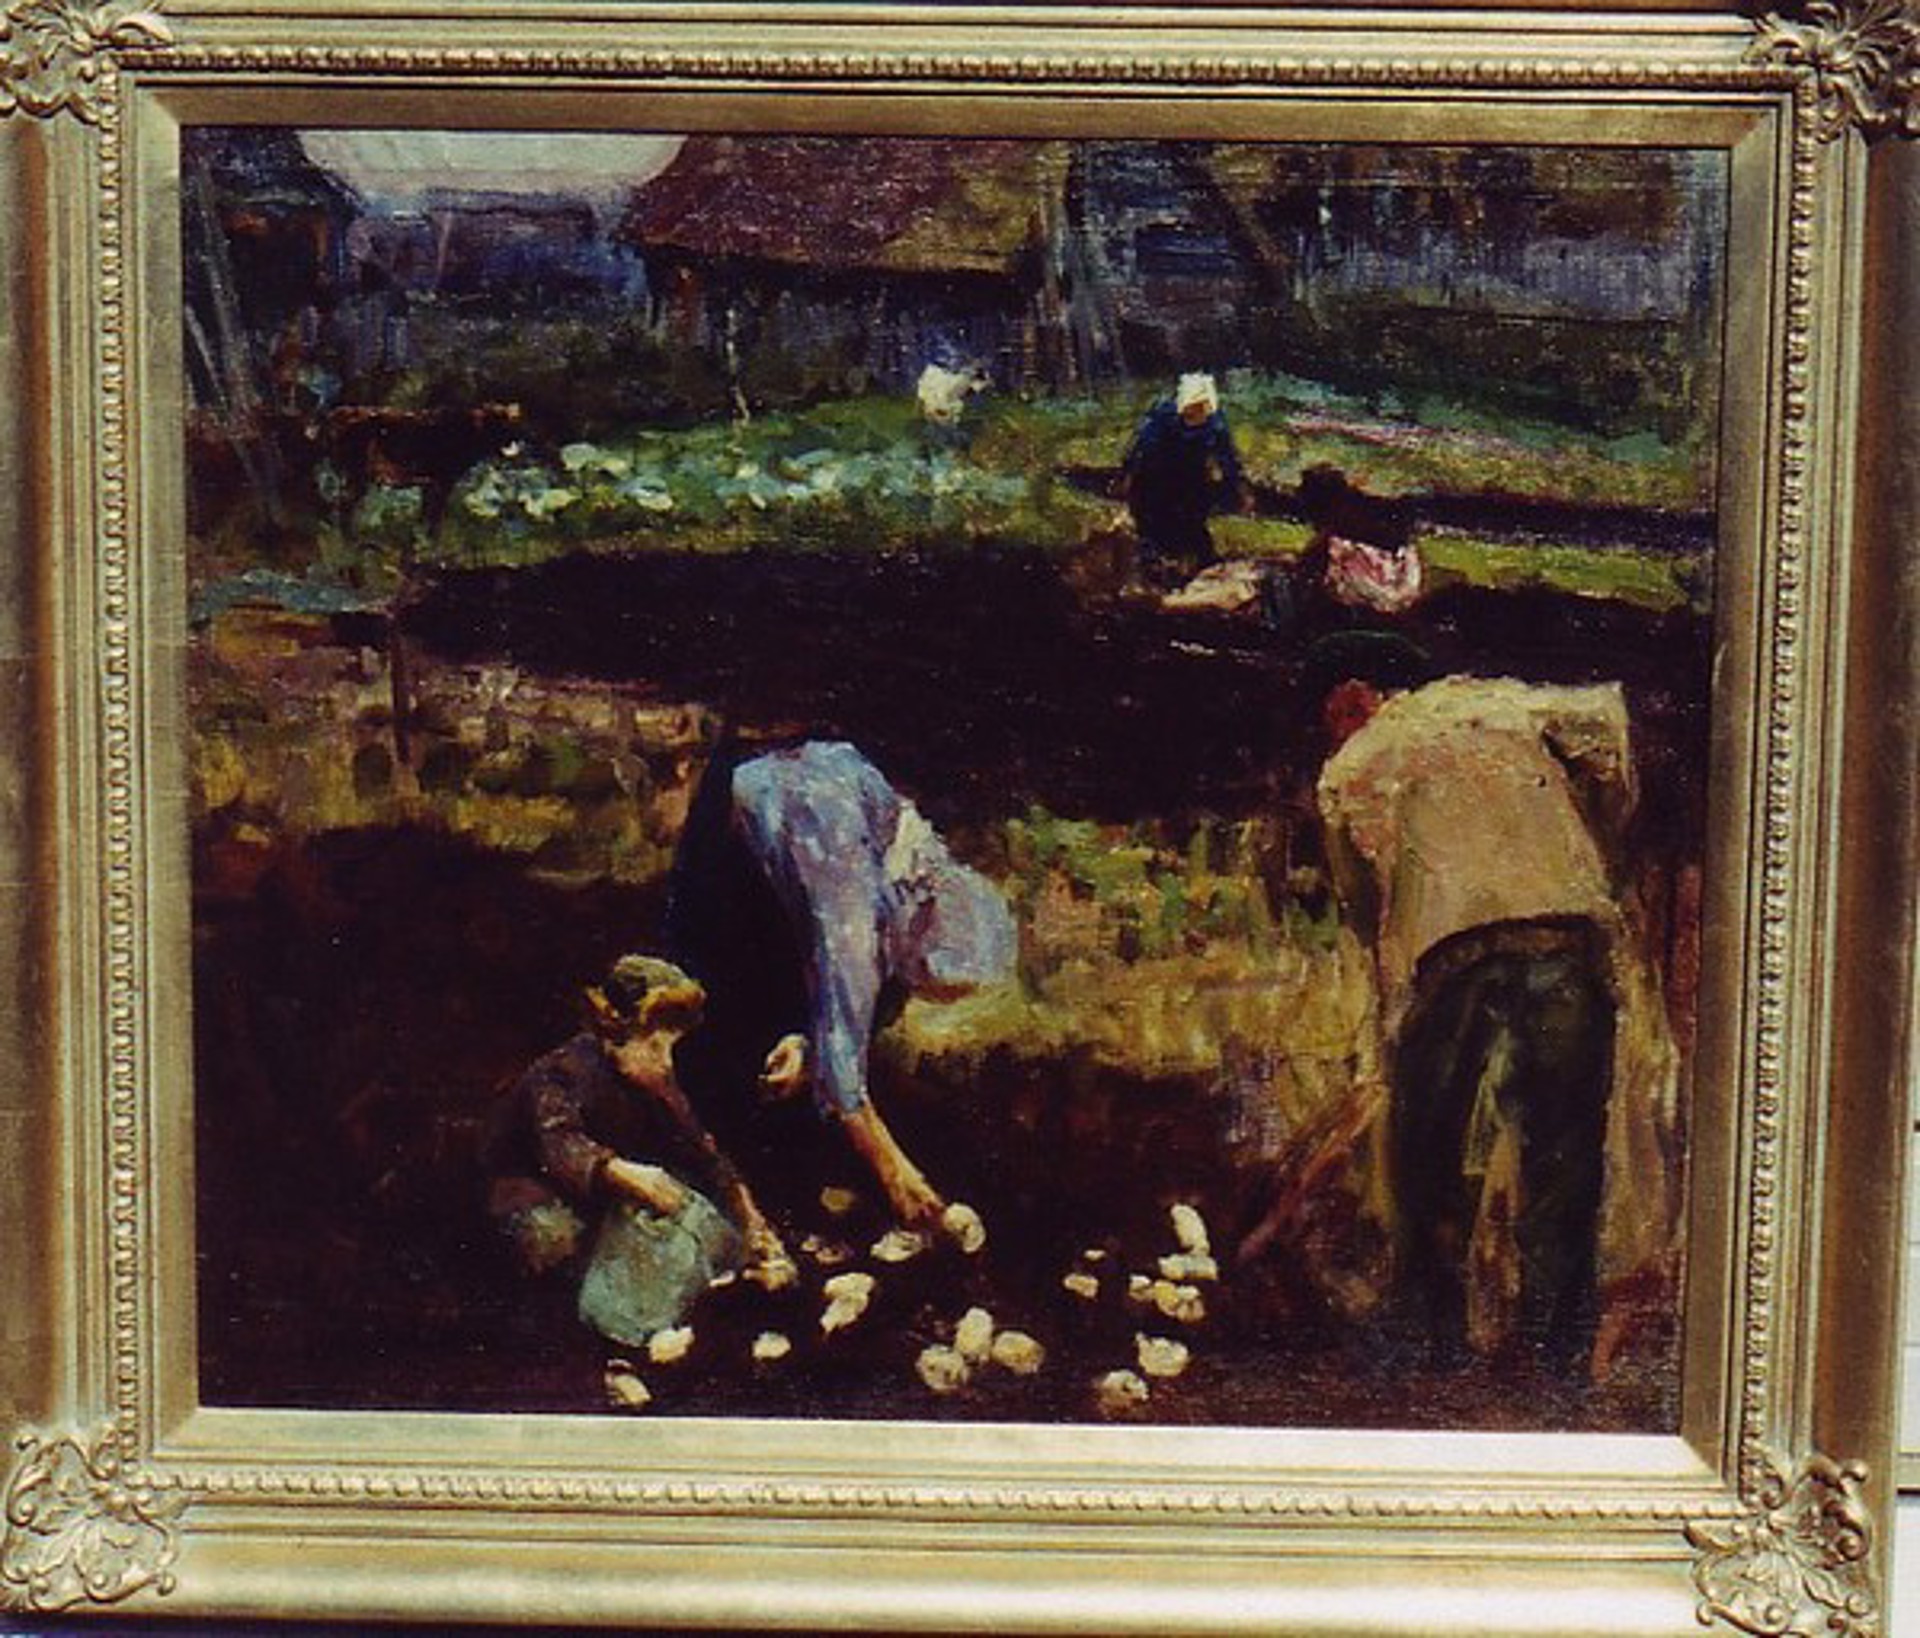 Potato Gatherers by Vladimir A. Zhukov